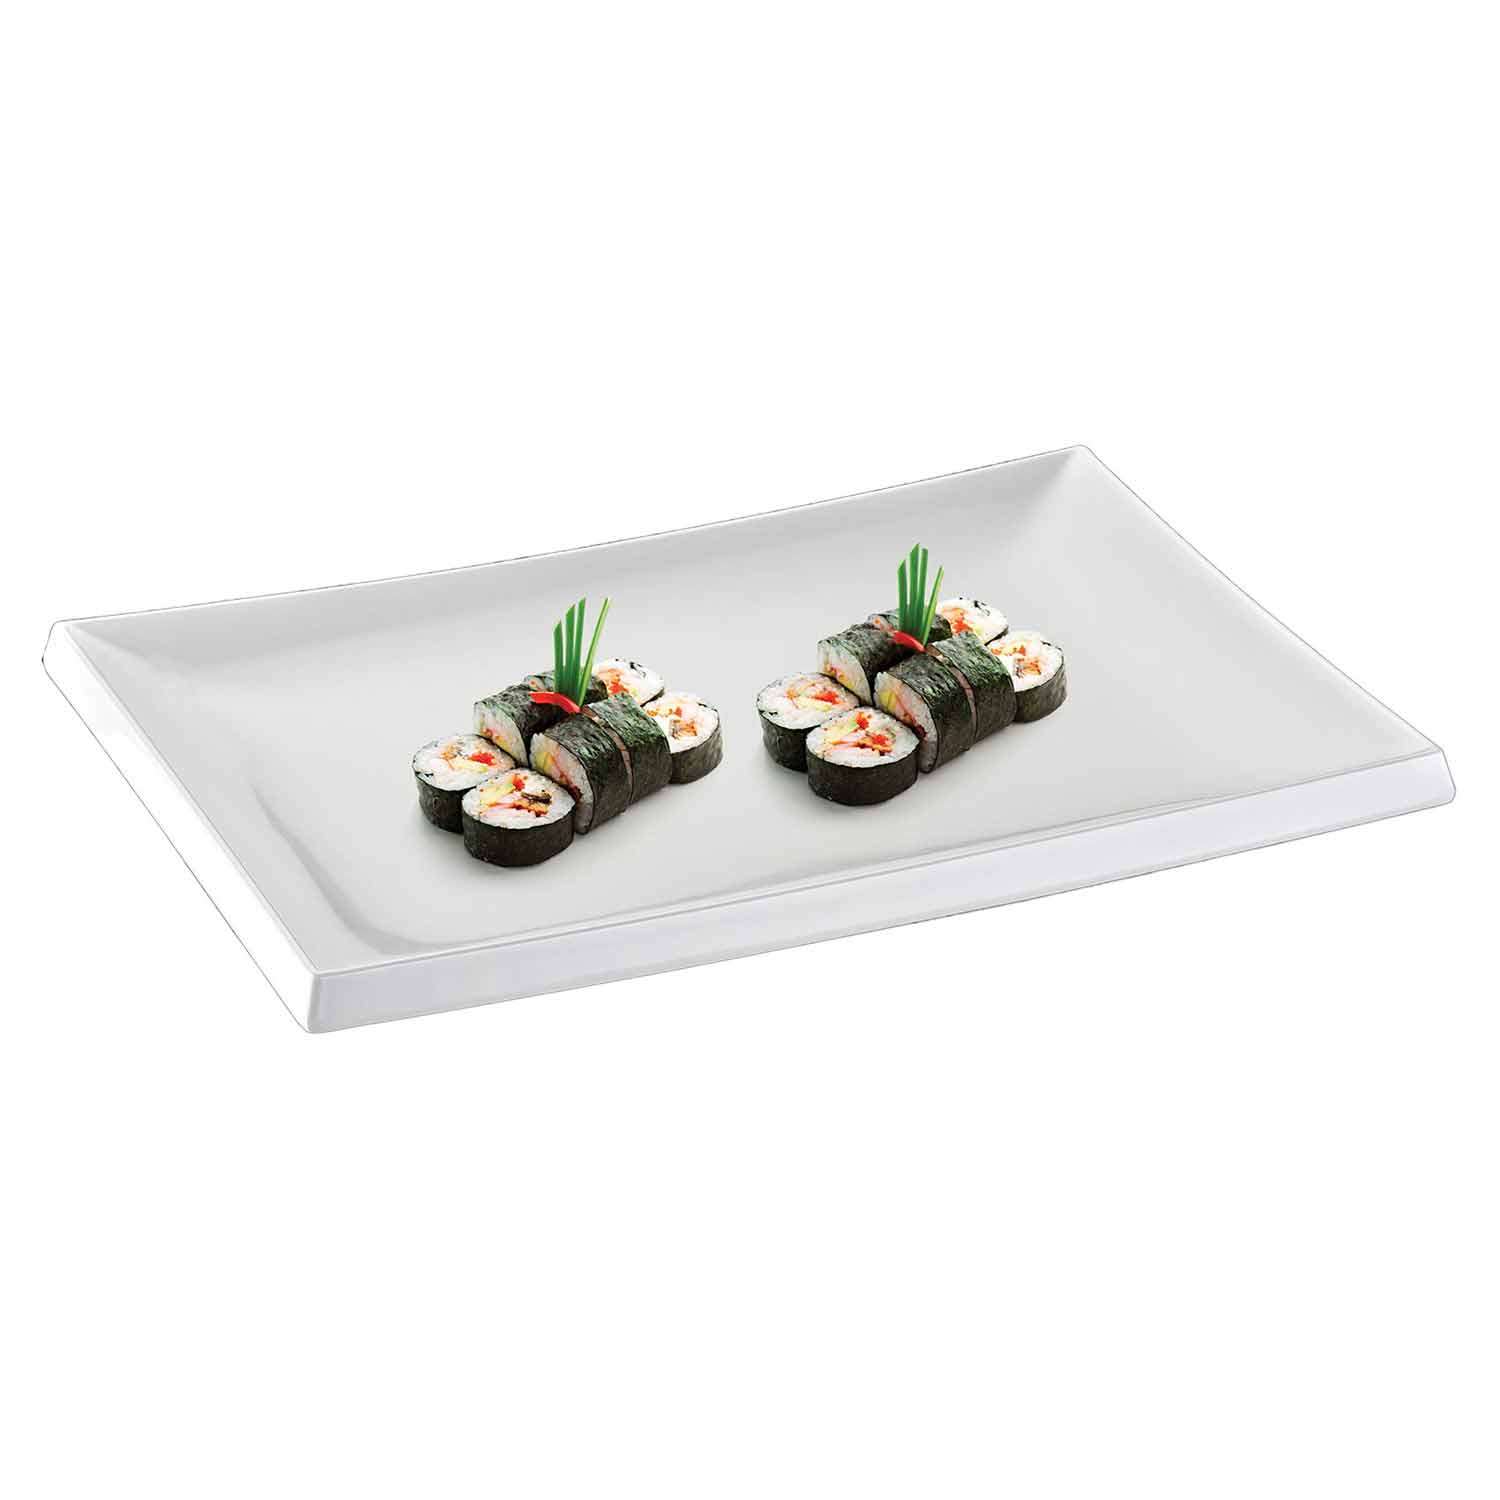 Biradlı Açık Büfe Sushi Servis Tabağı, Melamin, 40x27x2 Cm | iles.com.tr